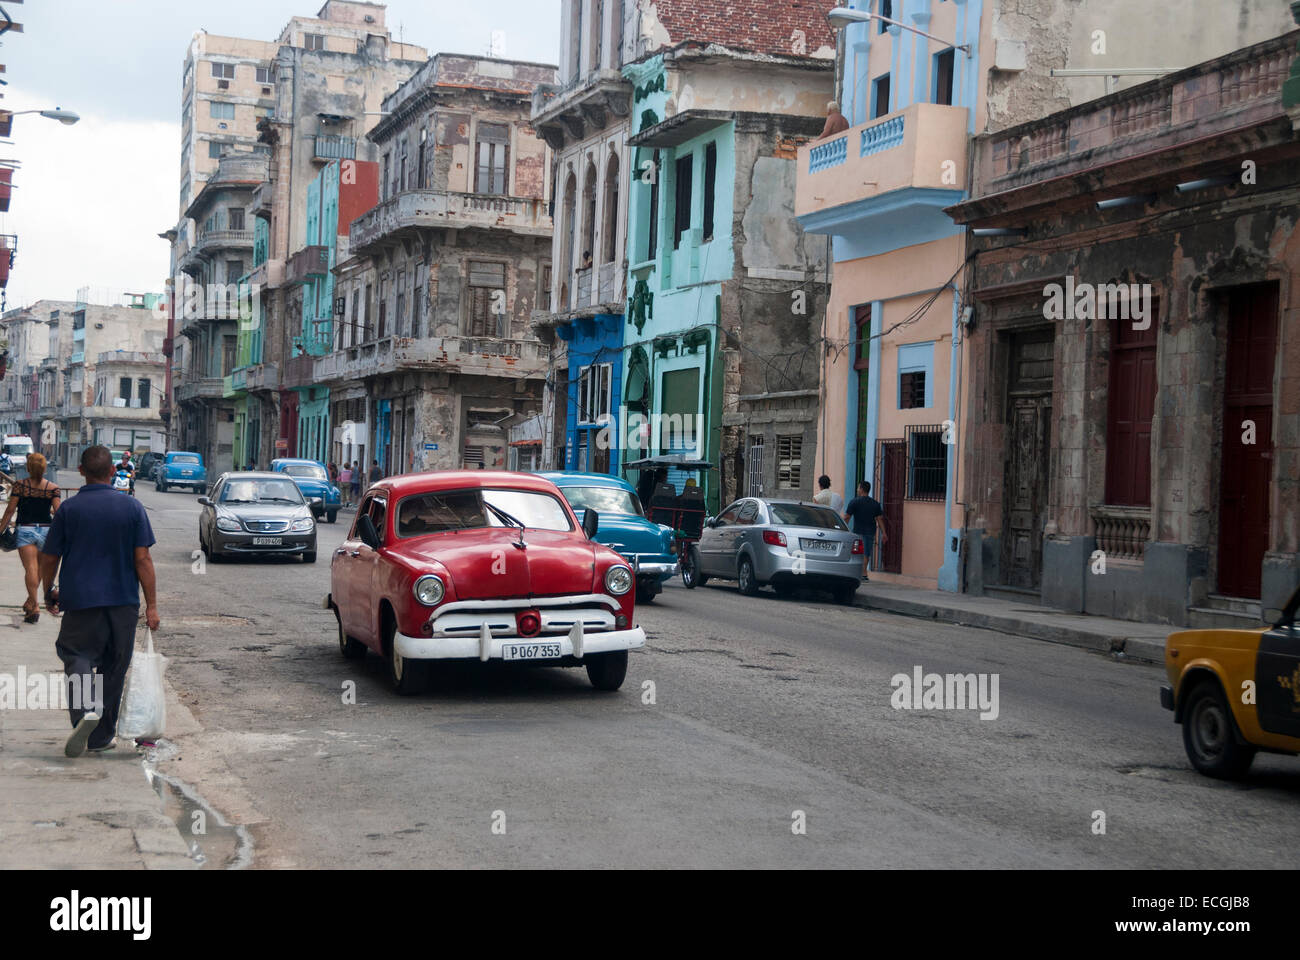 Los edificios ruinosos y vintage coches americanos usados como taxis son un espectáculo común en el distrito central de La Habana. Foto de stock